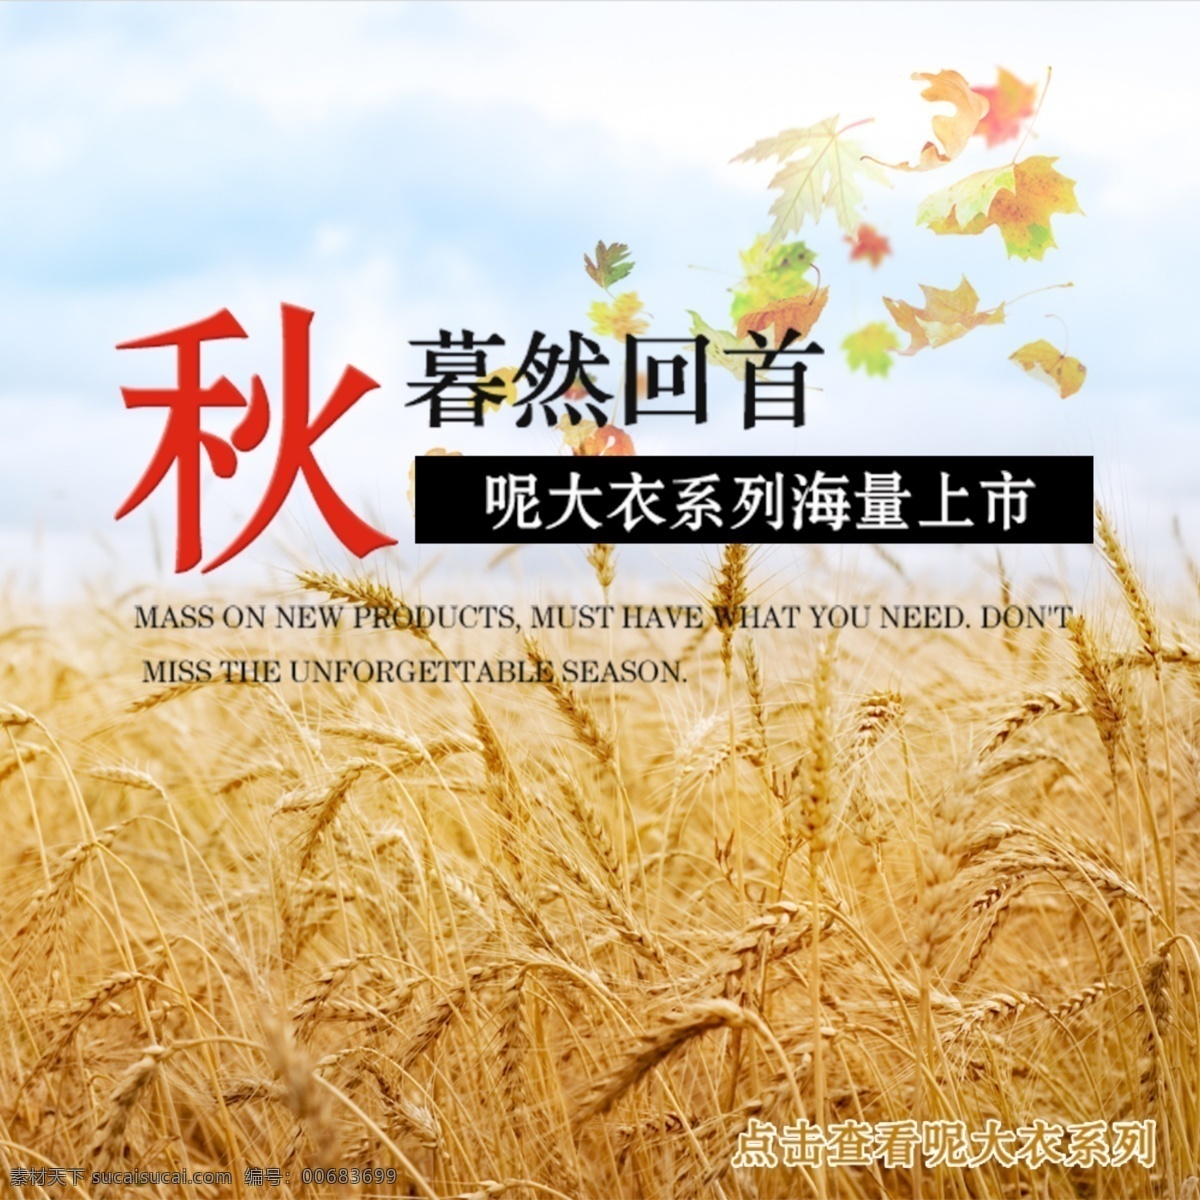 海报 背景 小麦 夏天 秋季海报宣传 秋季 服装 展板海报 白色